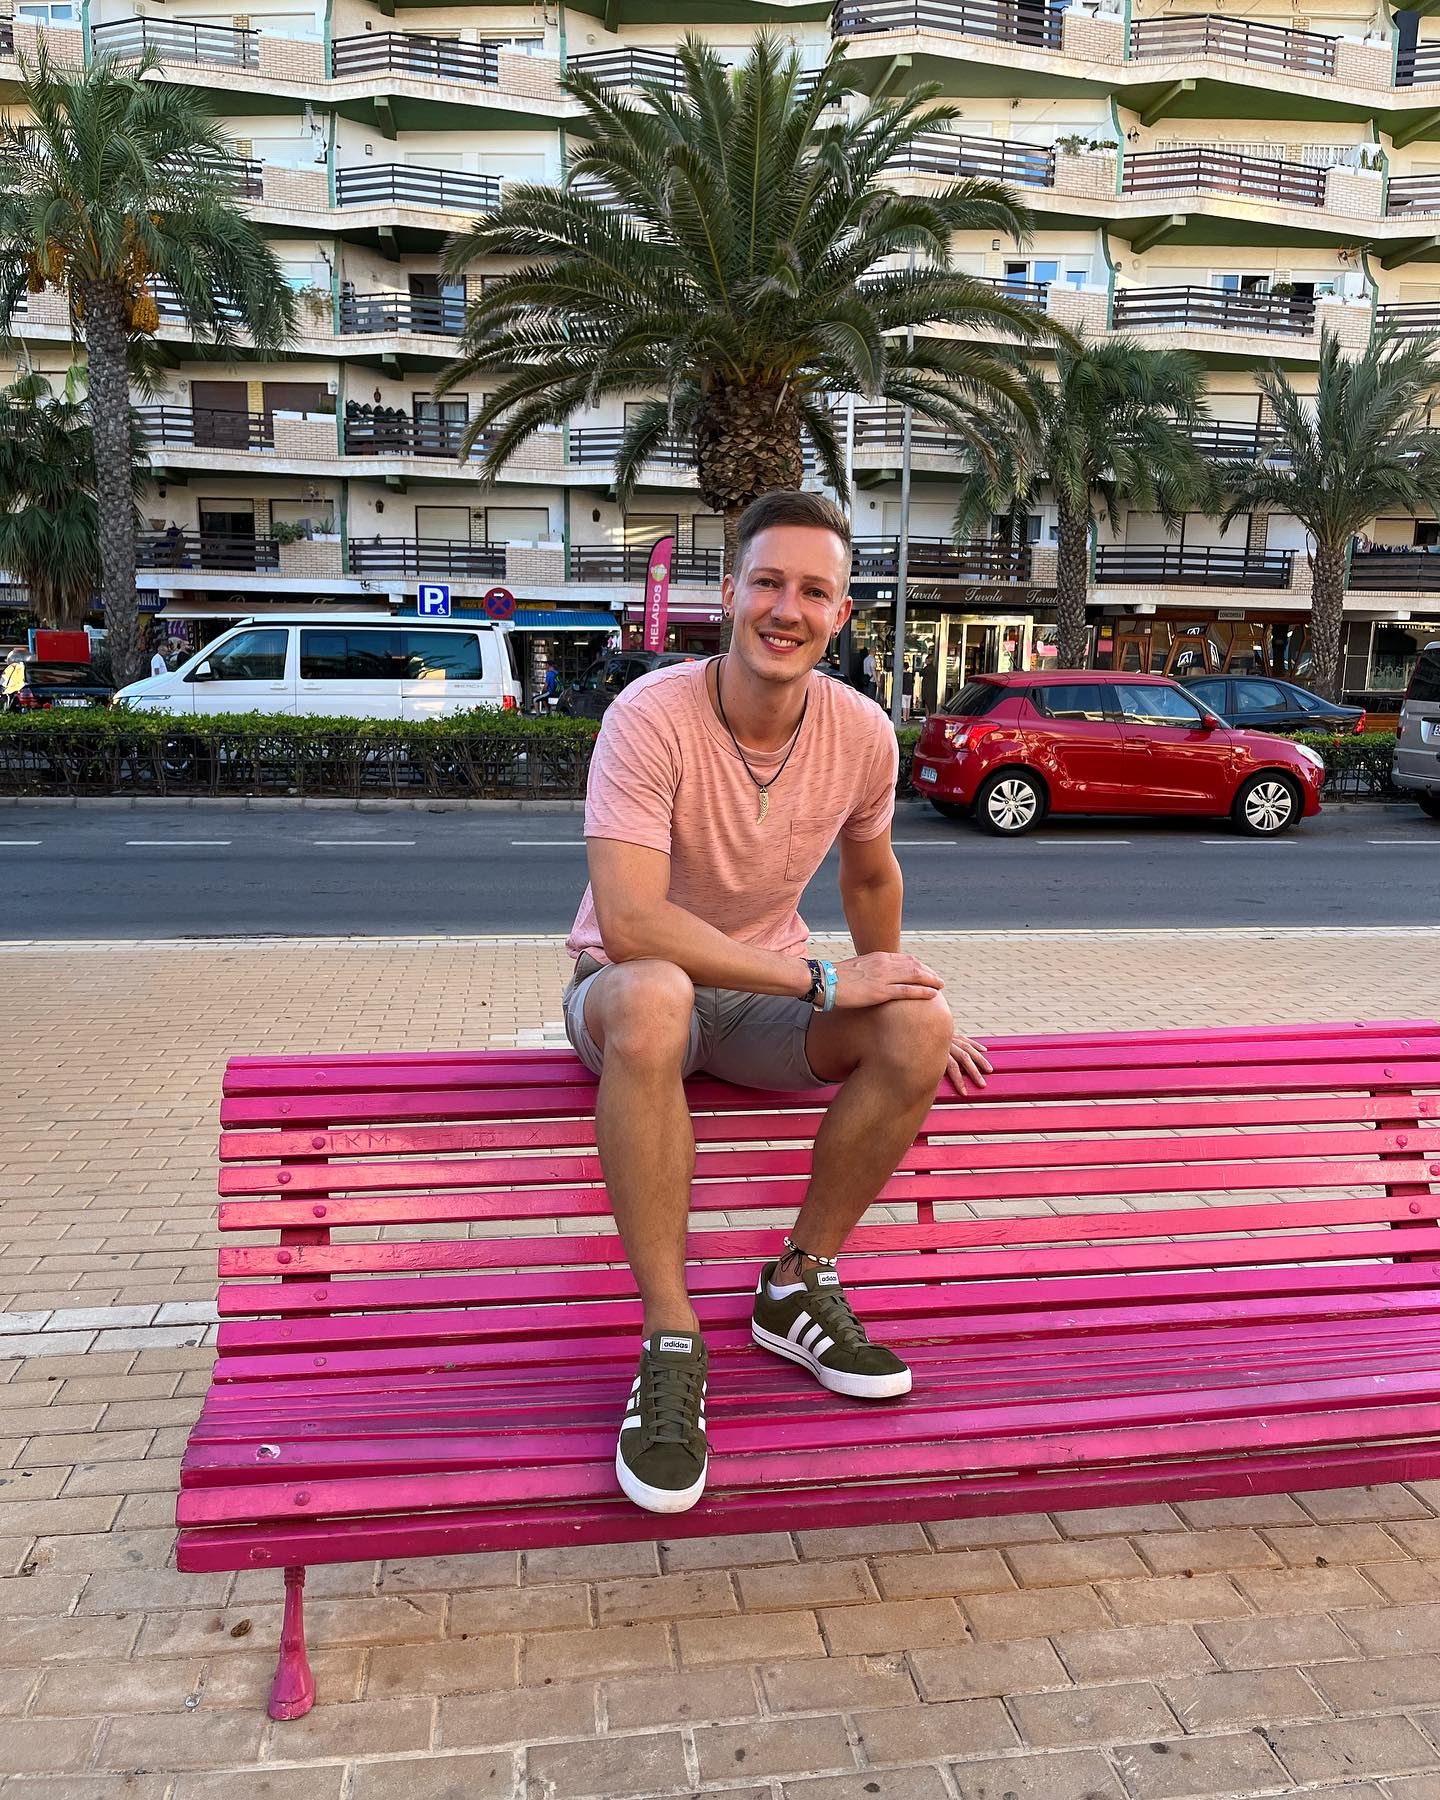 My life is pink 😄
#pink #urlaub #vacation #holiday #spain #malaga #travel #sun #summer #2023 #summerdays #german #cute #instagood #instaboy #boy #young #gayman #gayguy #gayfit